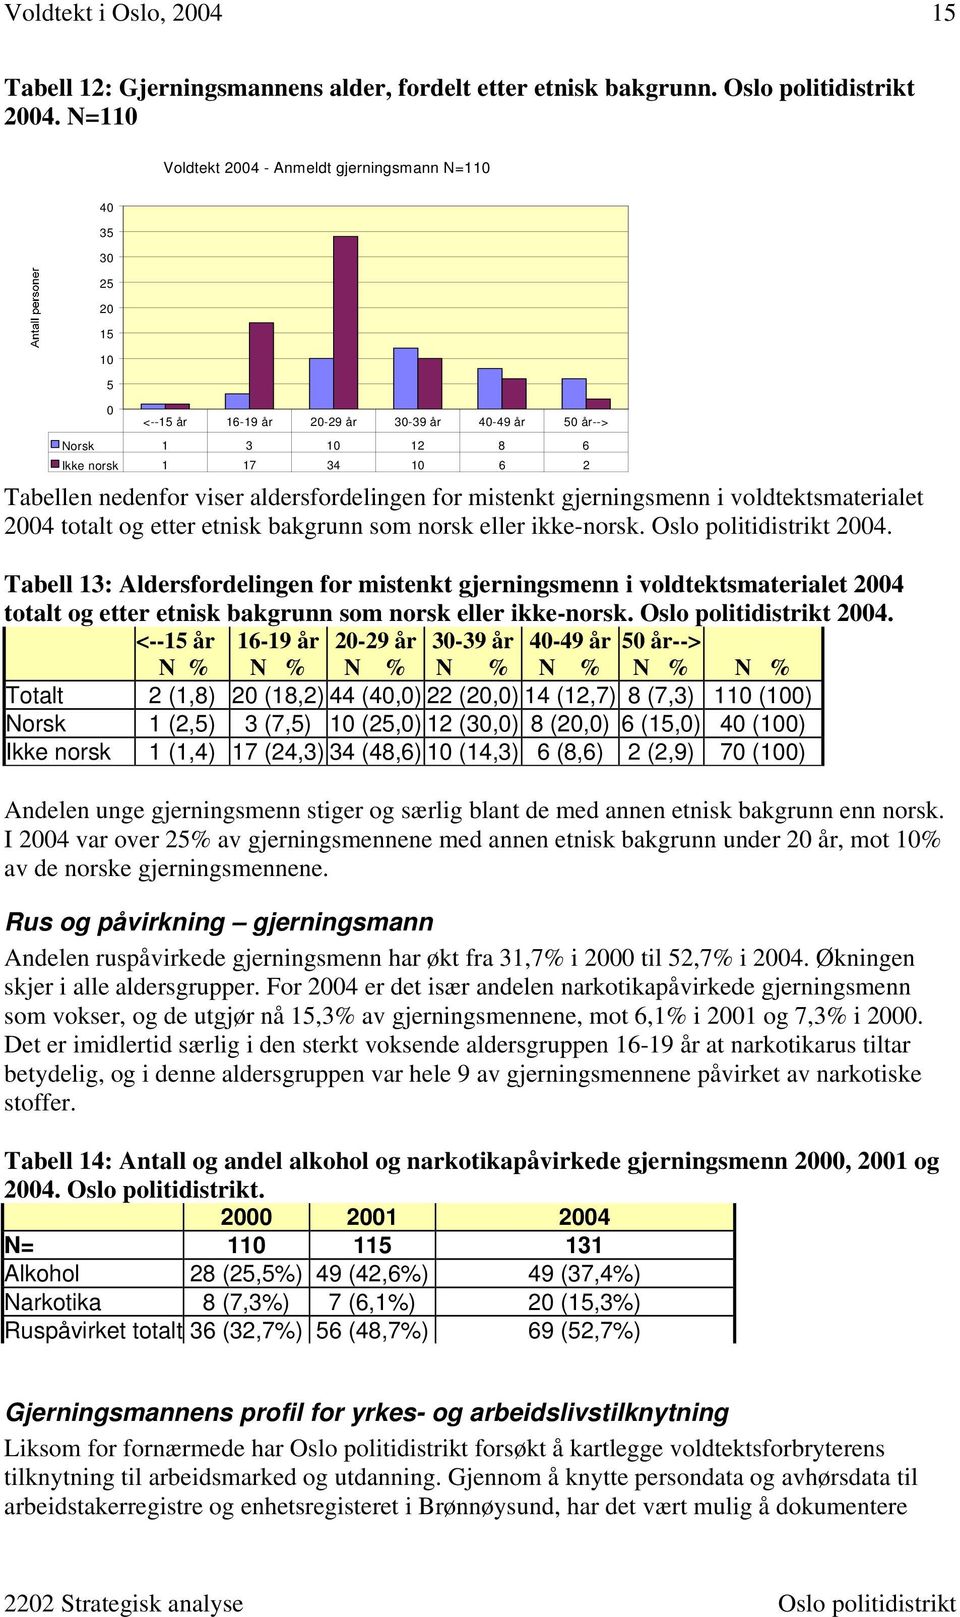 aldersfordelingen for mistenkt gjerningsmenn i voldtektsmaterialet 2004 totalt og etter etnisk bakgrunn som norsk eller ikke-norsk. Oslo politidistrikt 2004.